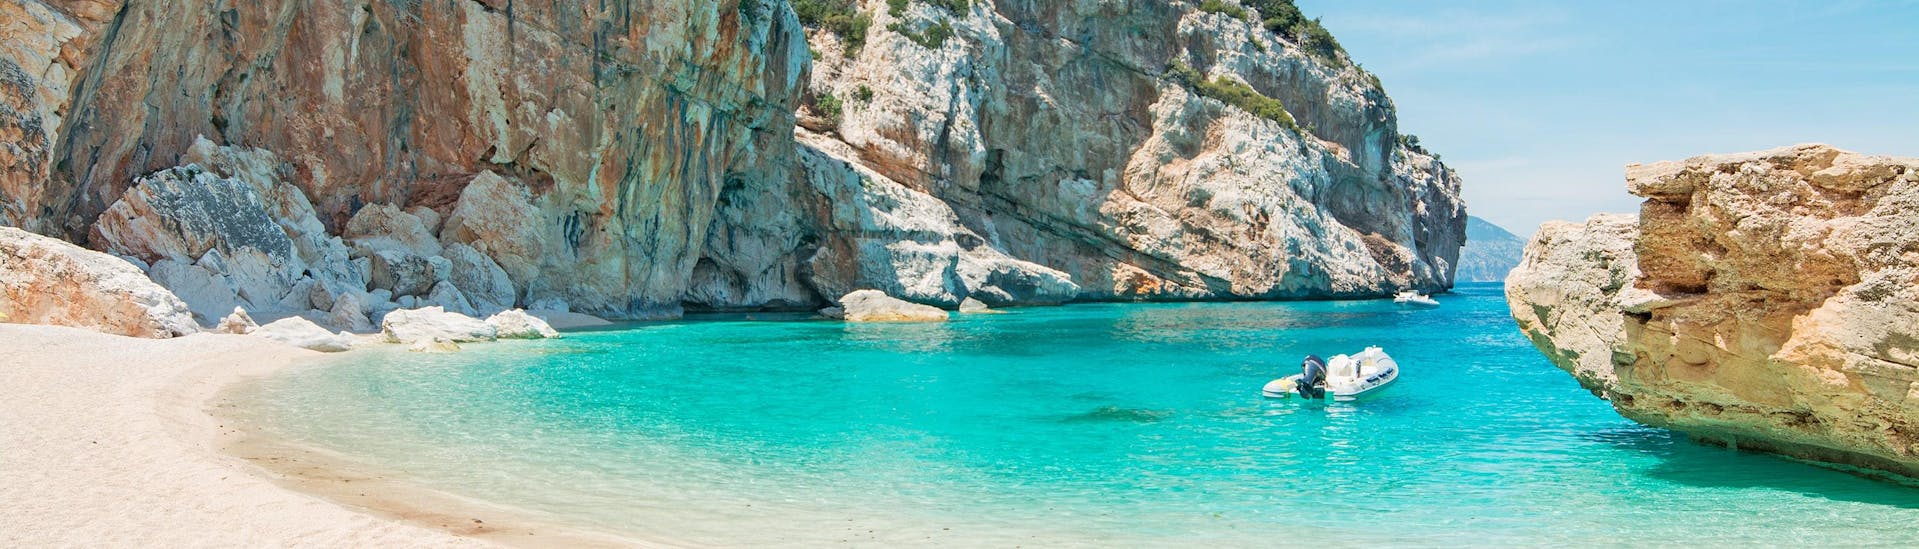 Une superbe plage le long de la côte de la Sardaigne que l'on peut voir pendant une balade en bateau.